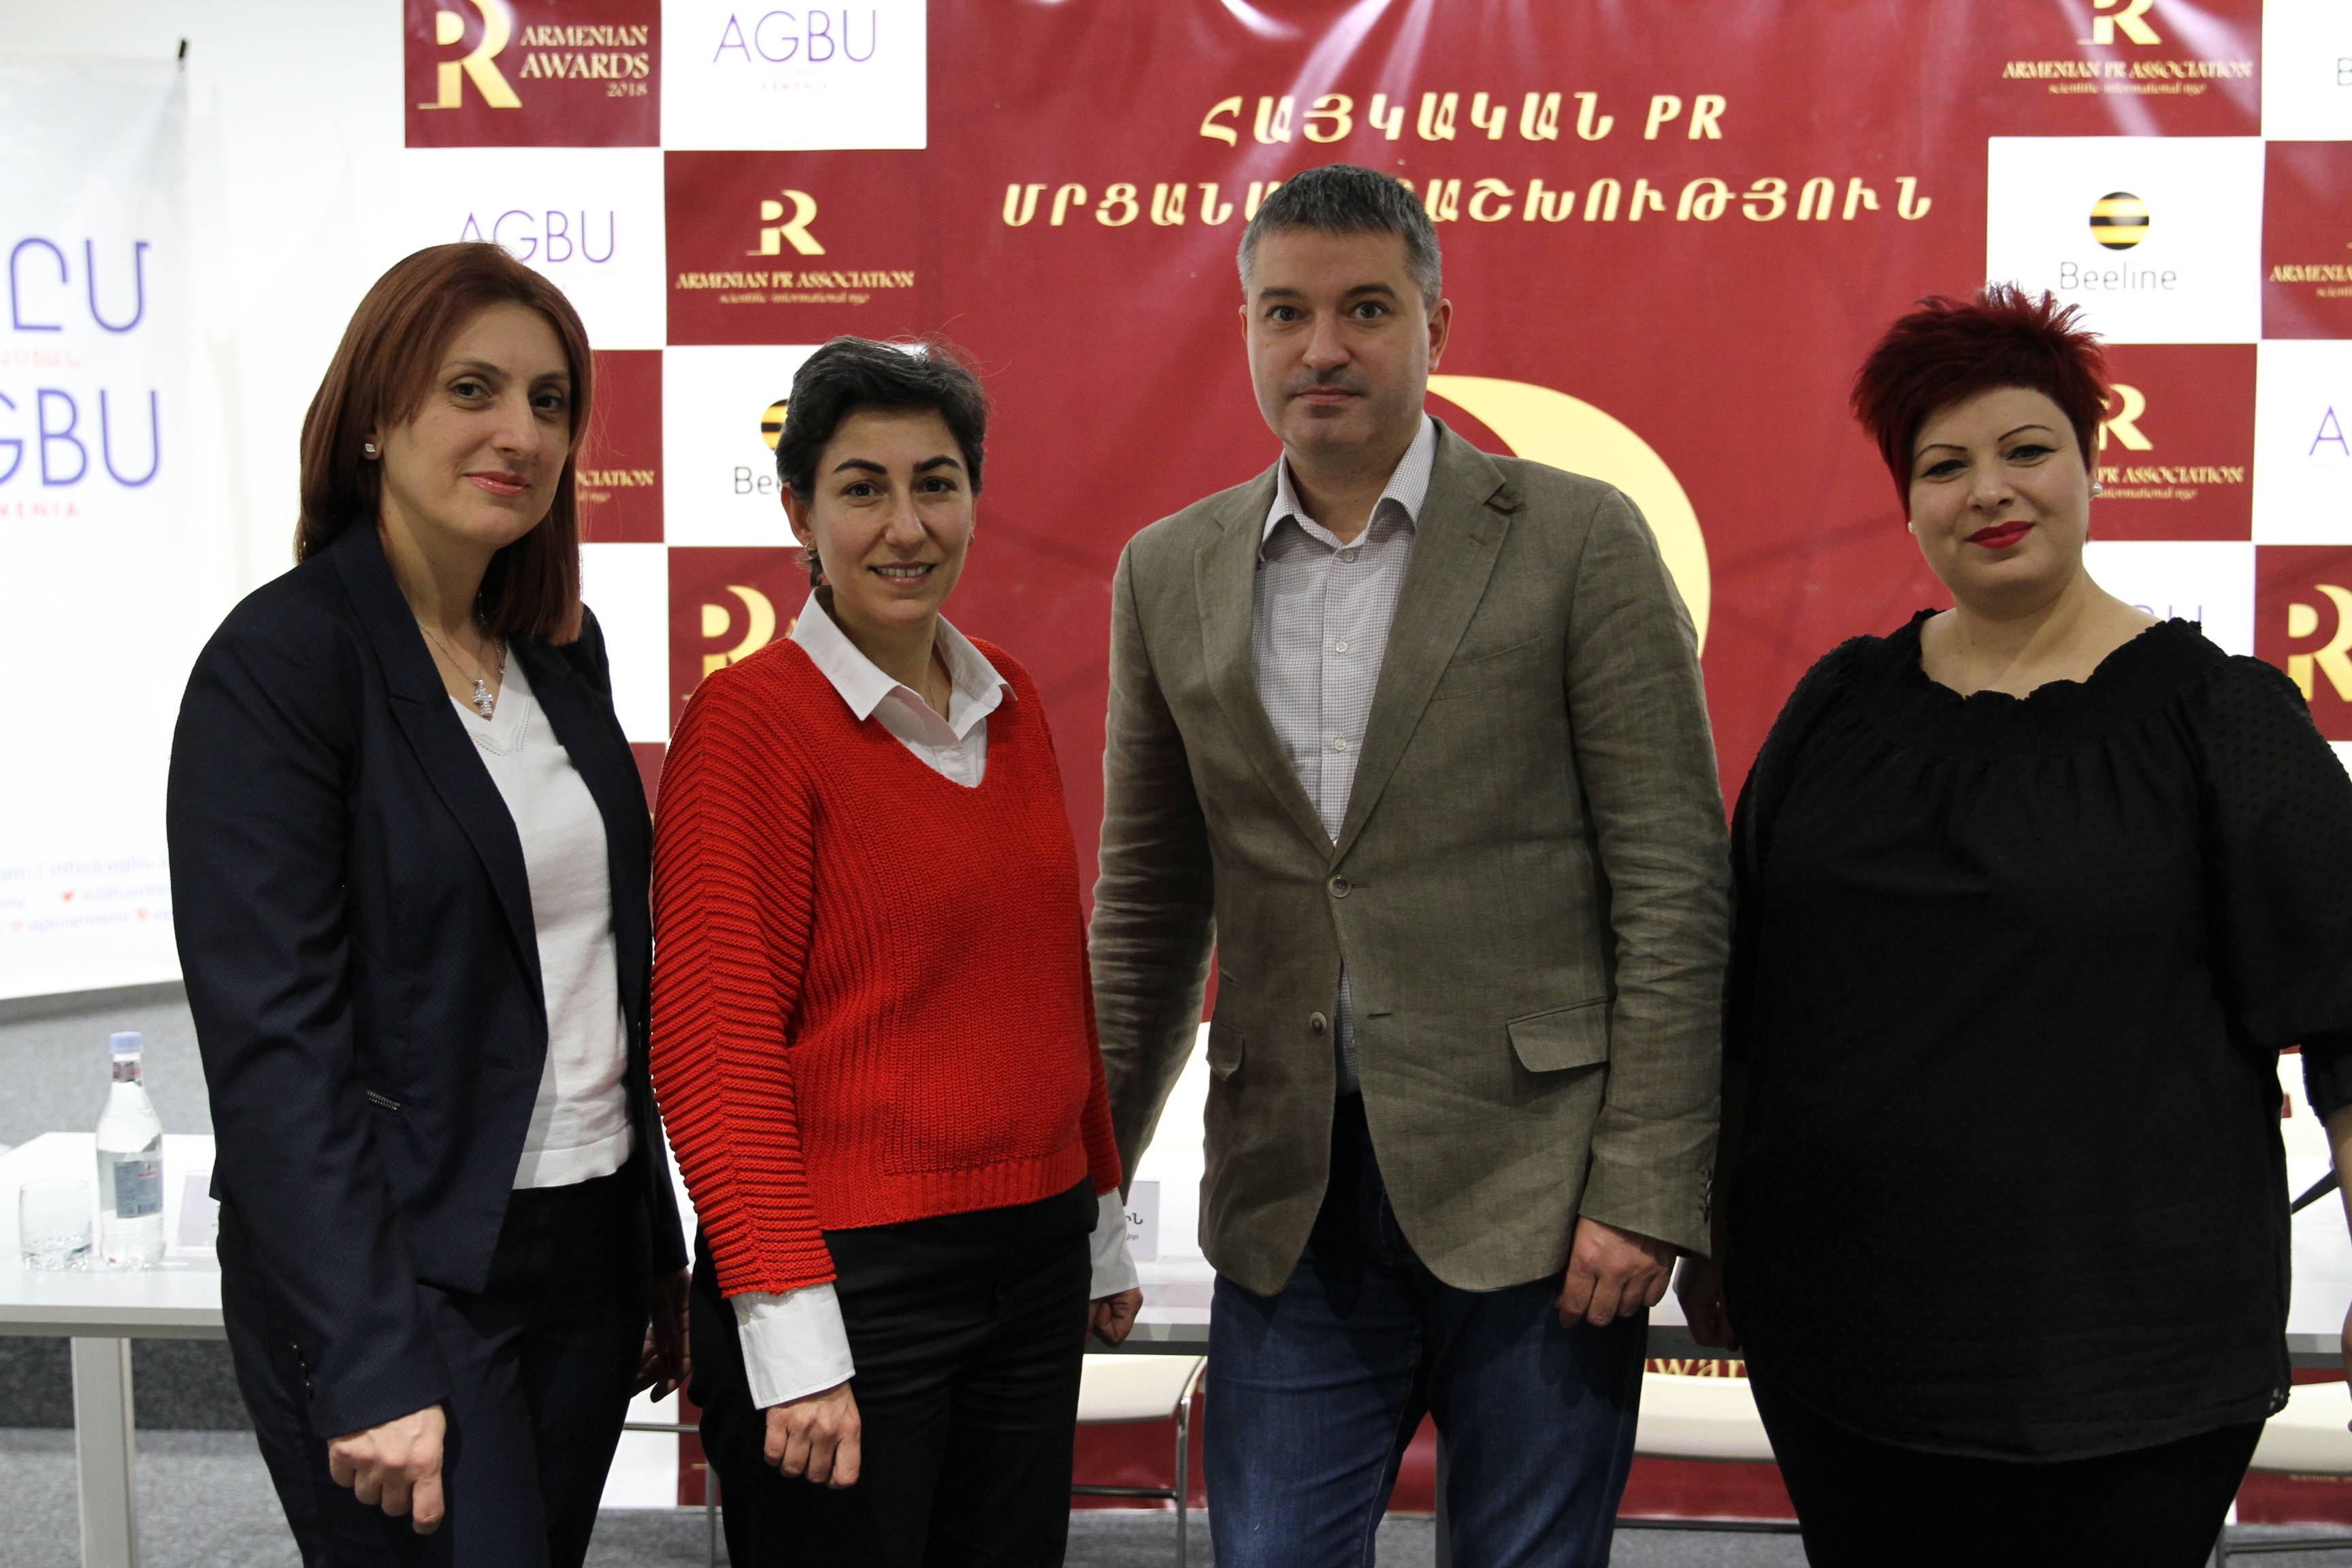 Лучшие PR менеджеры Армении будут награждены в третий раз